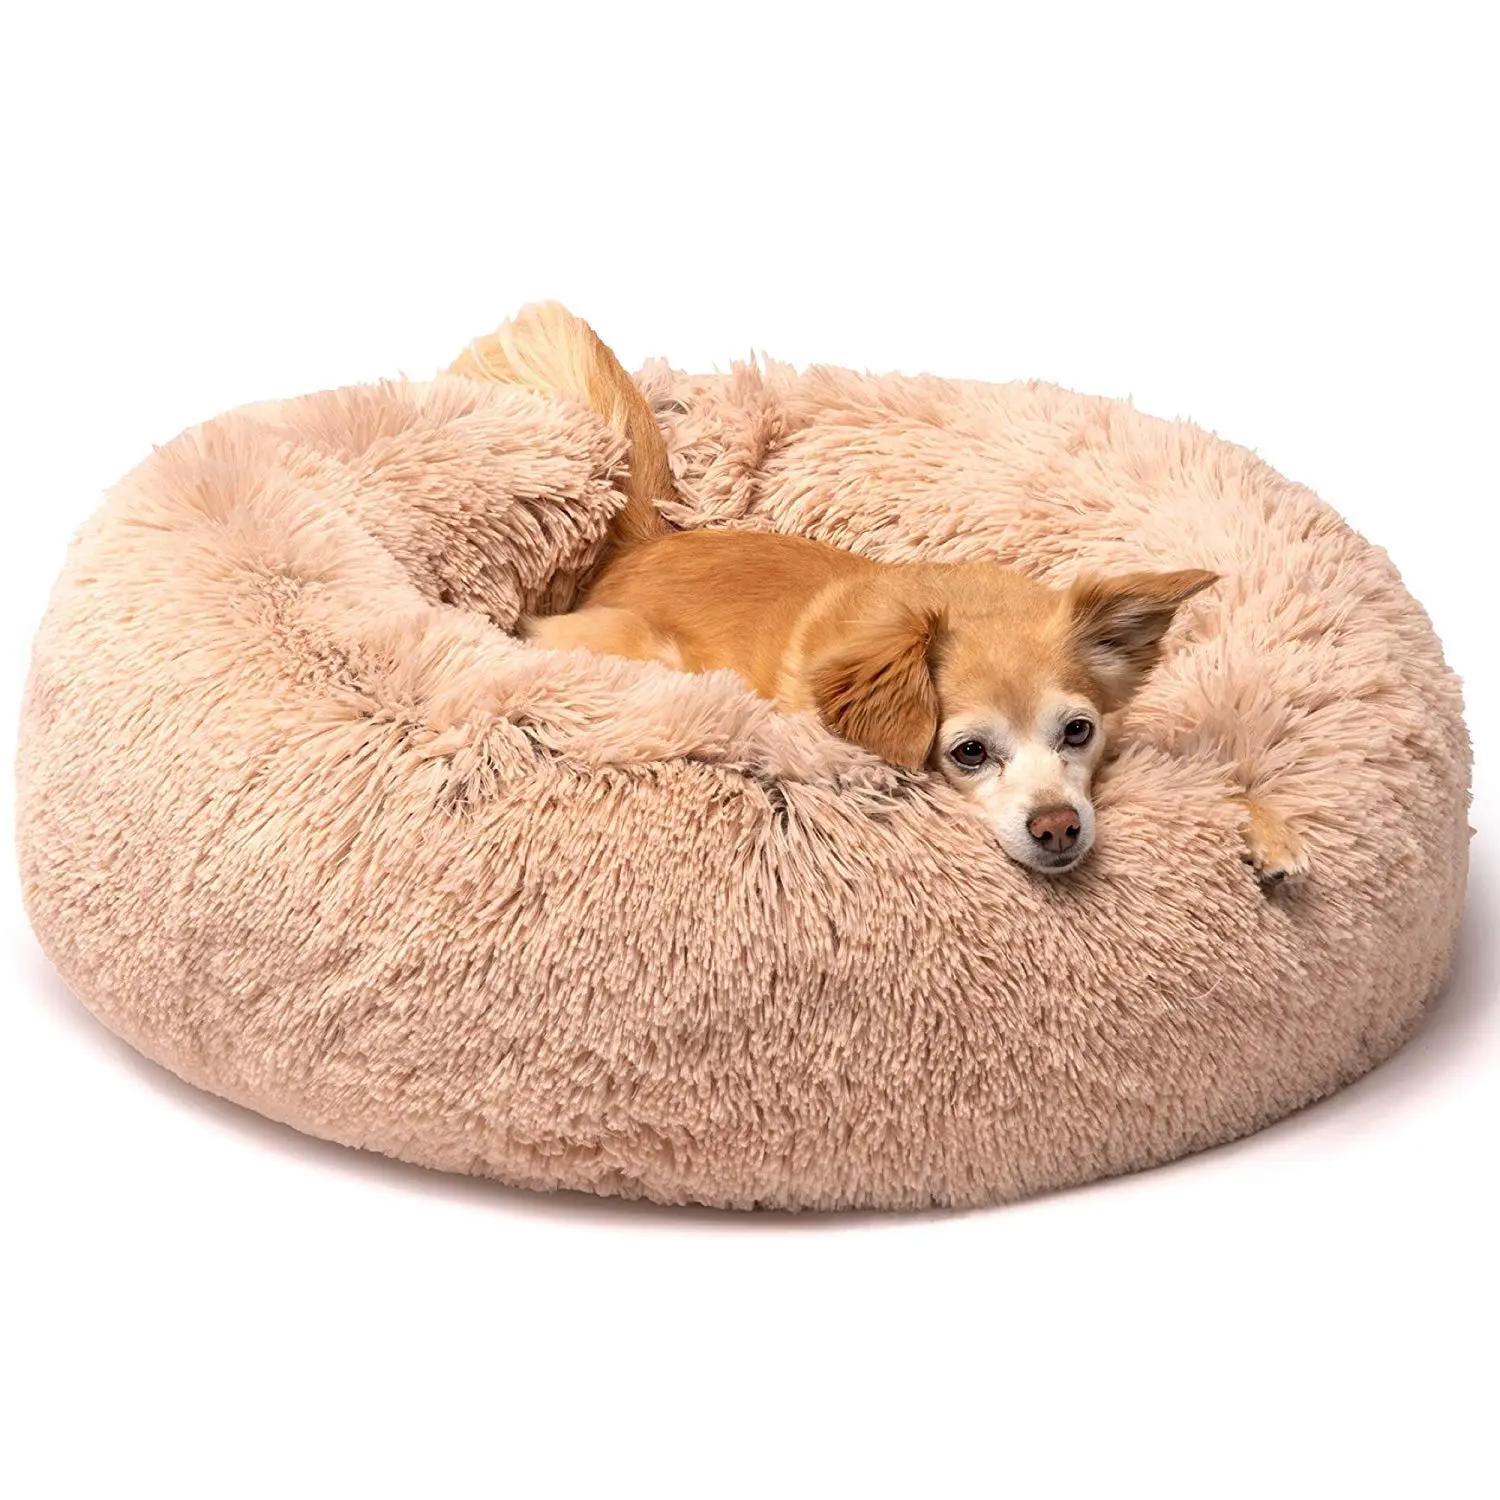 Съемная и моющаяся кровать для собаки, большая кровать для домашнего питомца, коврик для золотистого ретривера, зимний матрас, зимняя теплая плотная спальная кровать